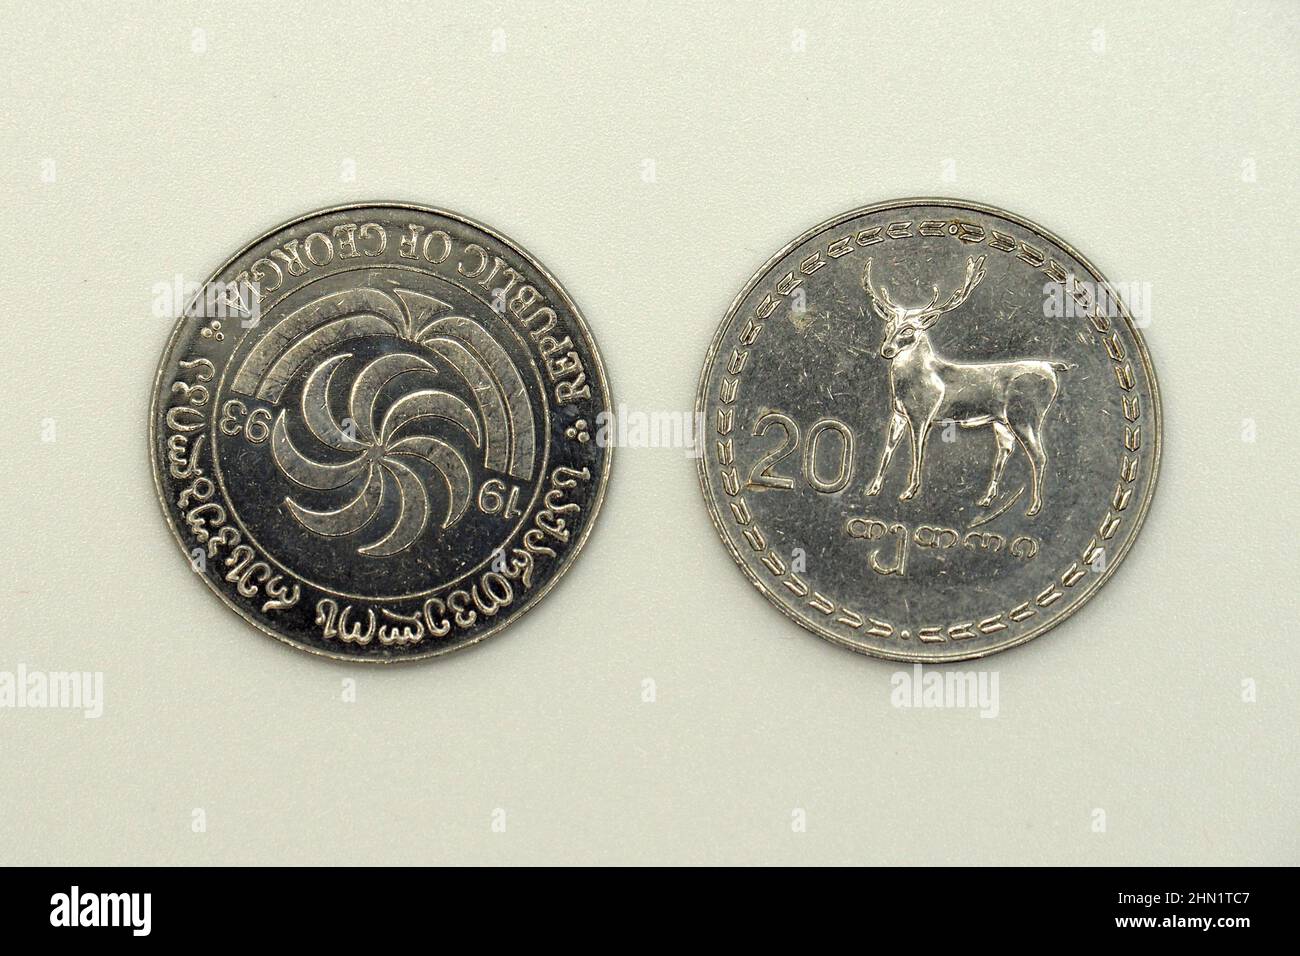 twenty (20) tetri coin, Georgian lari (GEL), Georgia, Europe Stock Photo